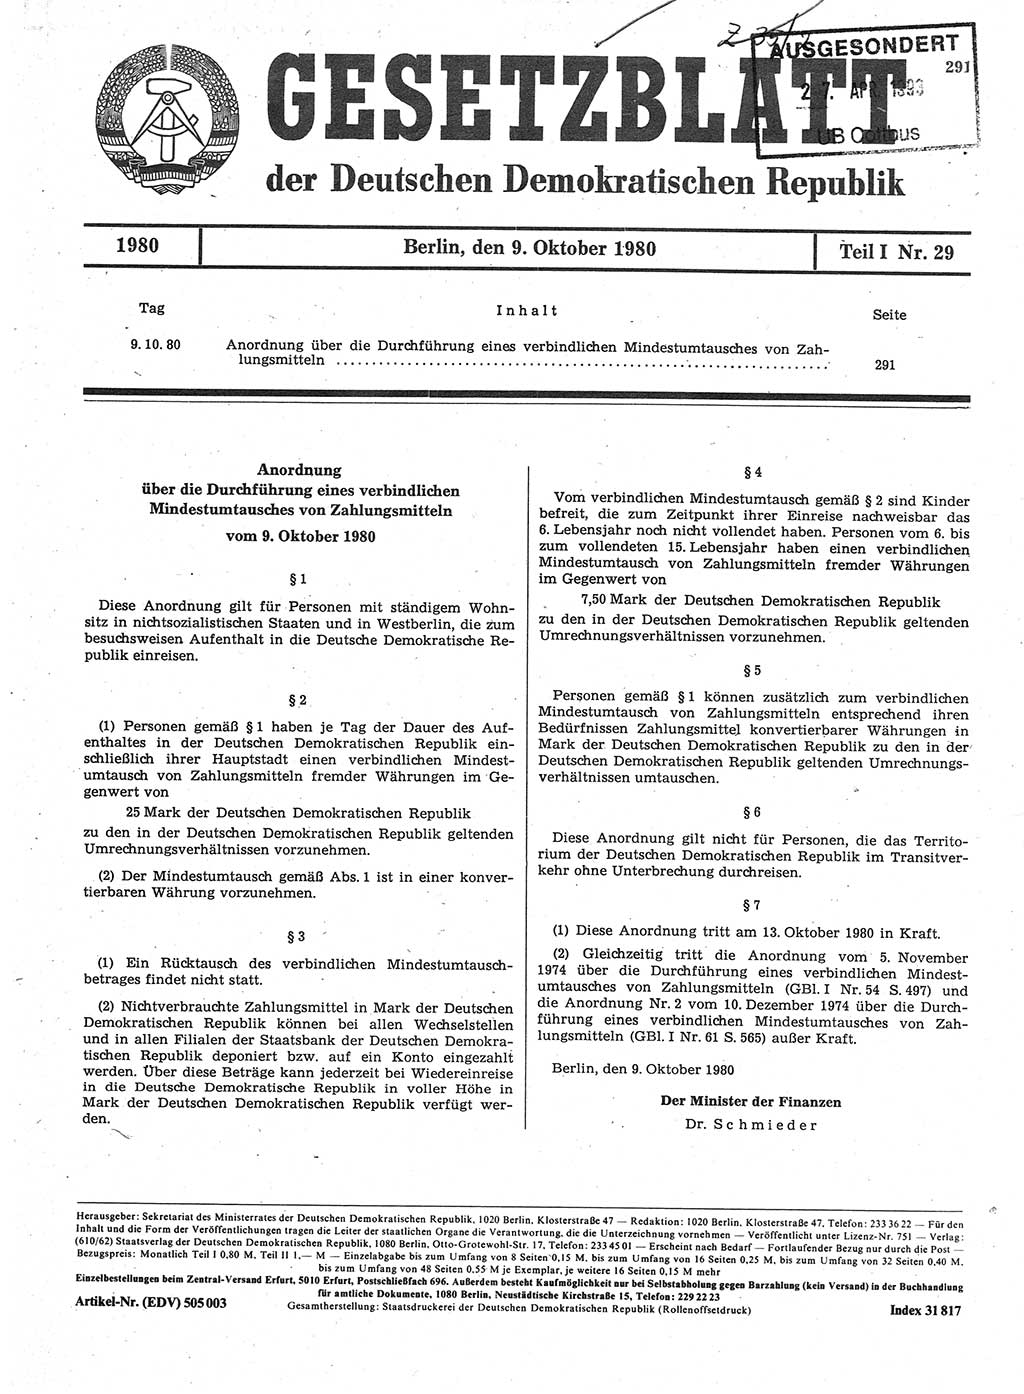 Gesetzblatt (GBl.) der Deutschen Demokratischen Republik (DDR) Teil Ⅰ 1980, Seite 291 (GBl. DDR Ⅰ 1980, S. 291)